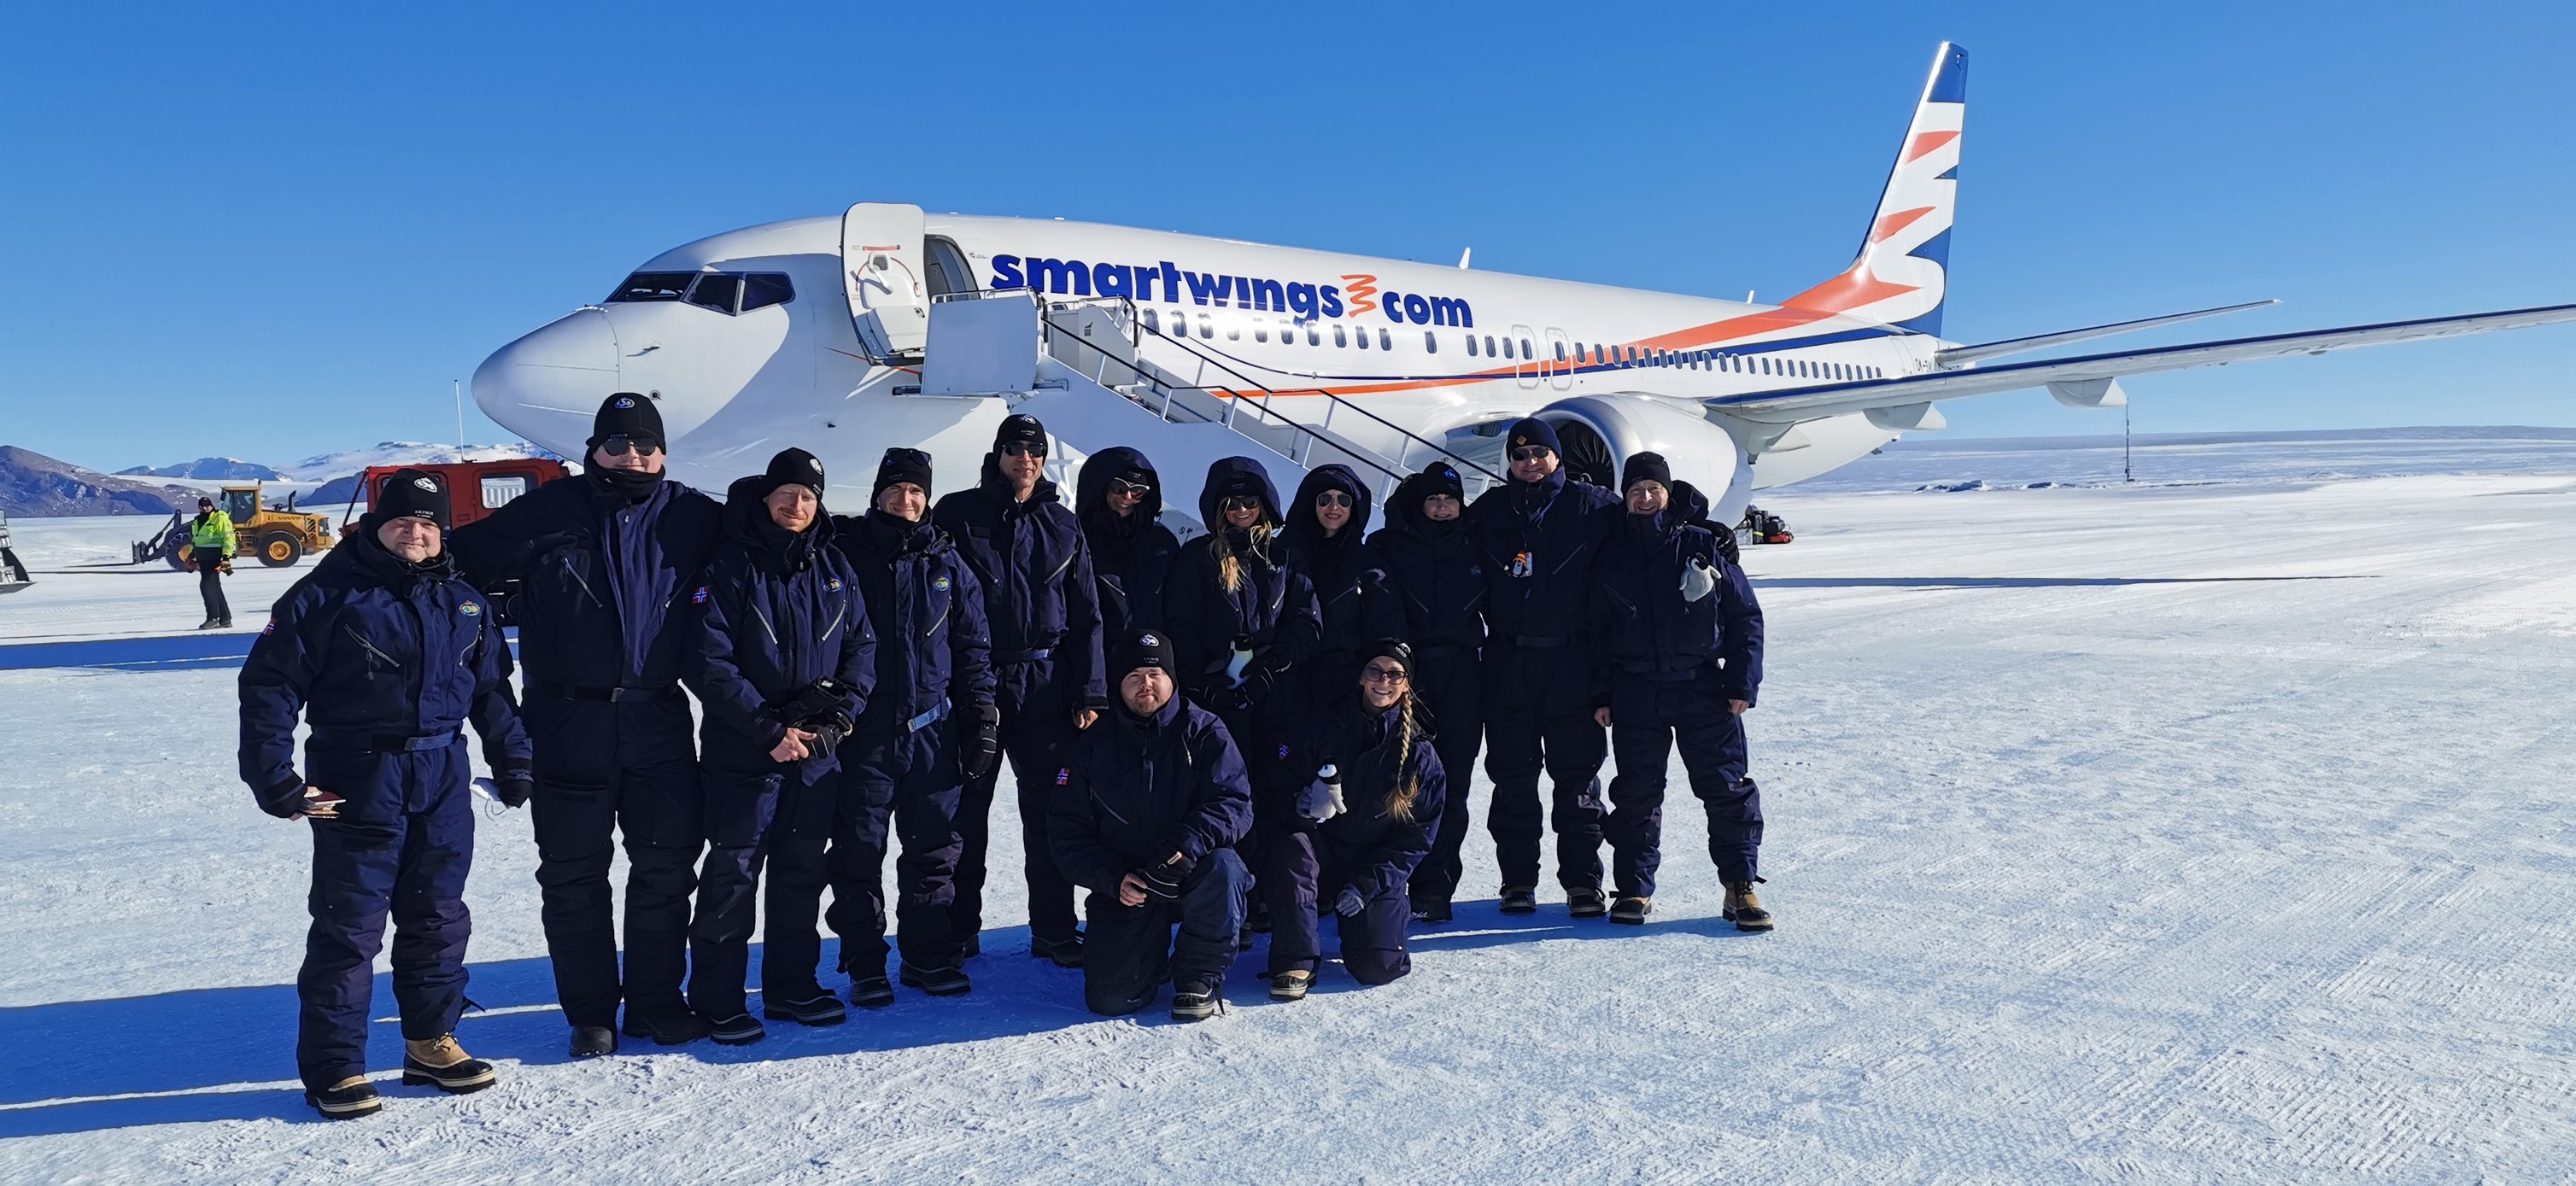 Smartwings přistály potřetí s polárníky na Troll Airfield / Foto: Facebook.com @smartwingscz